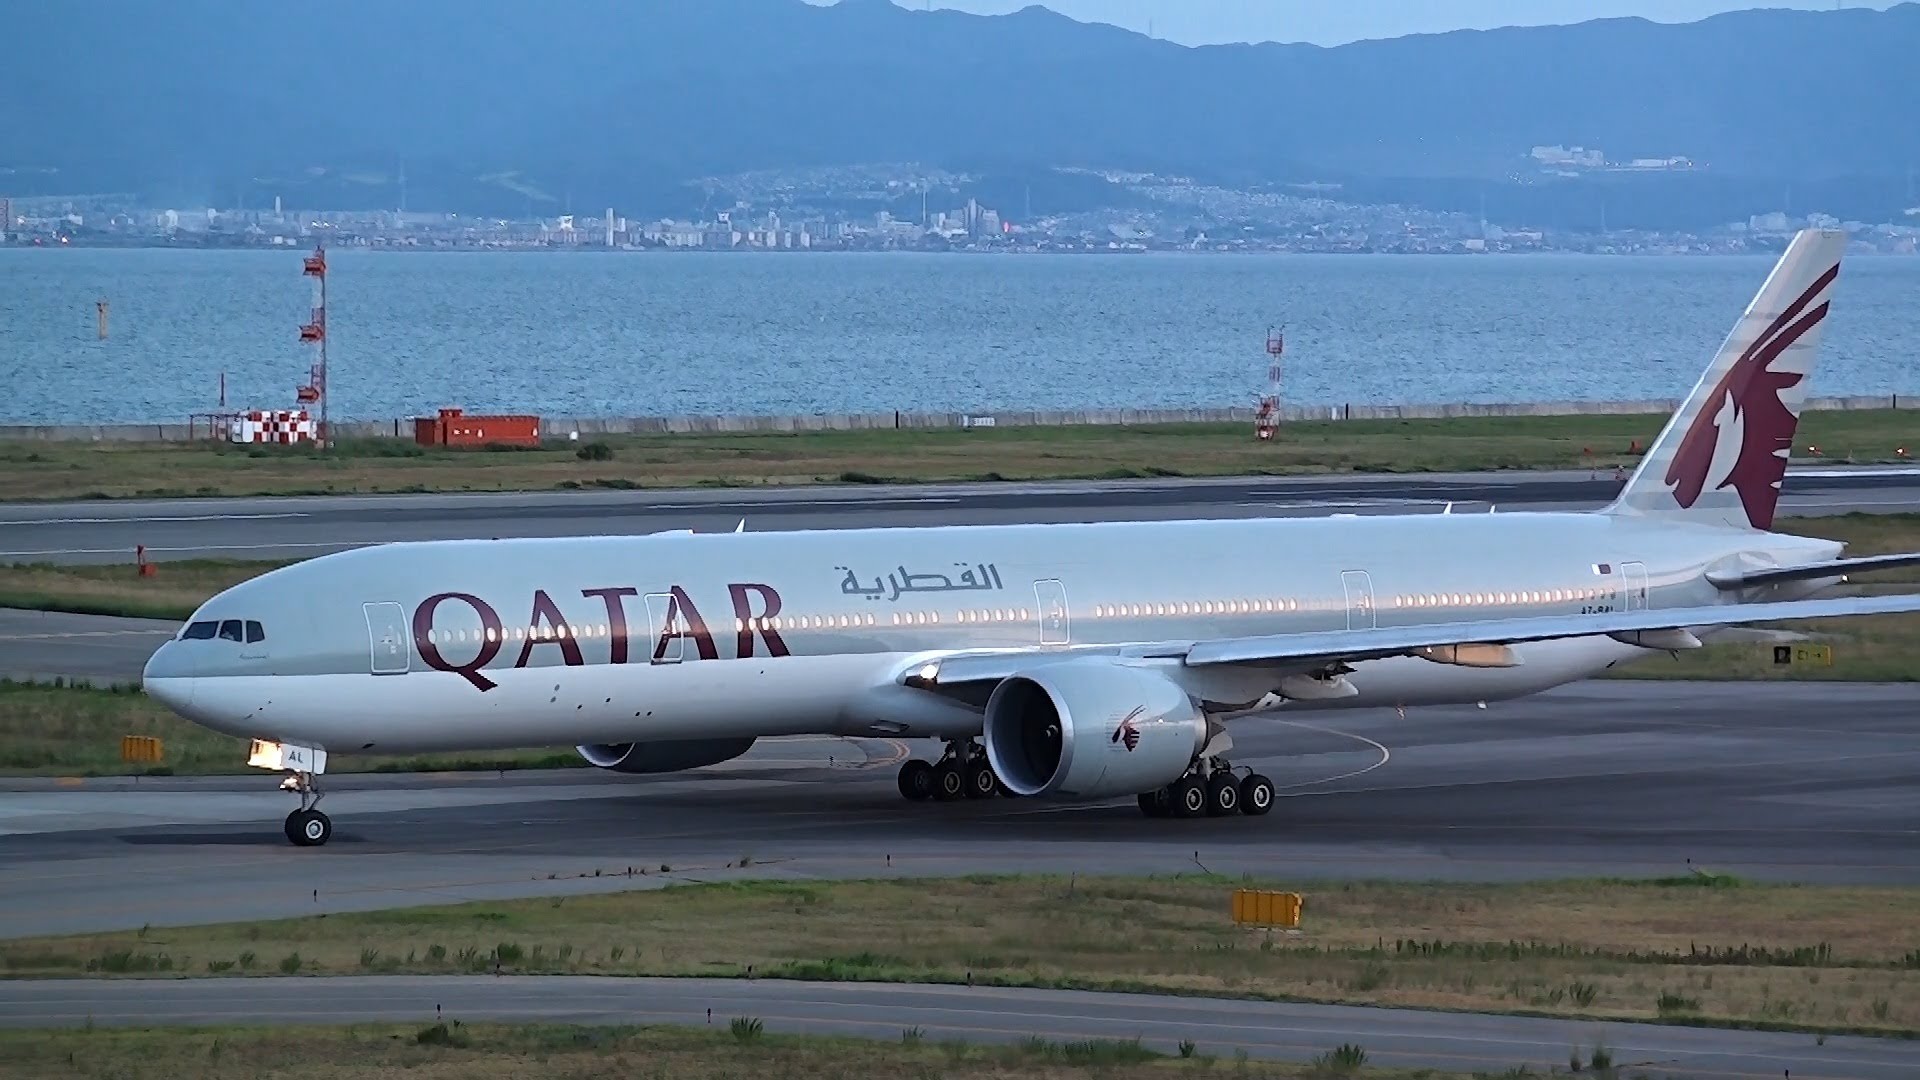 Qatar Boeing 777 300er , HD Wallpaper & Backgrounds